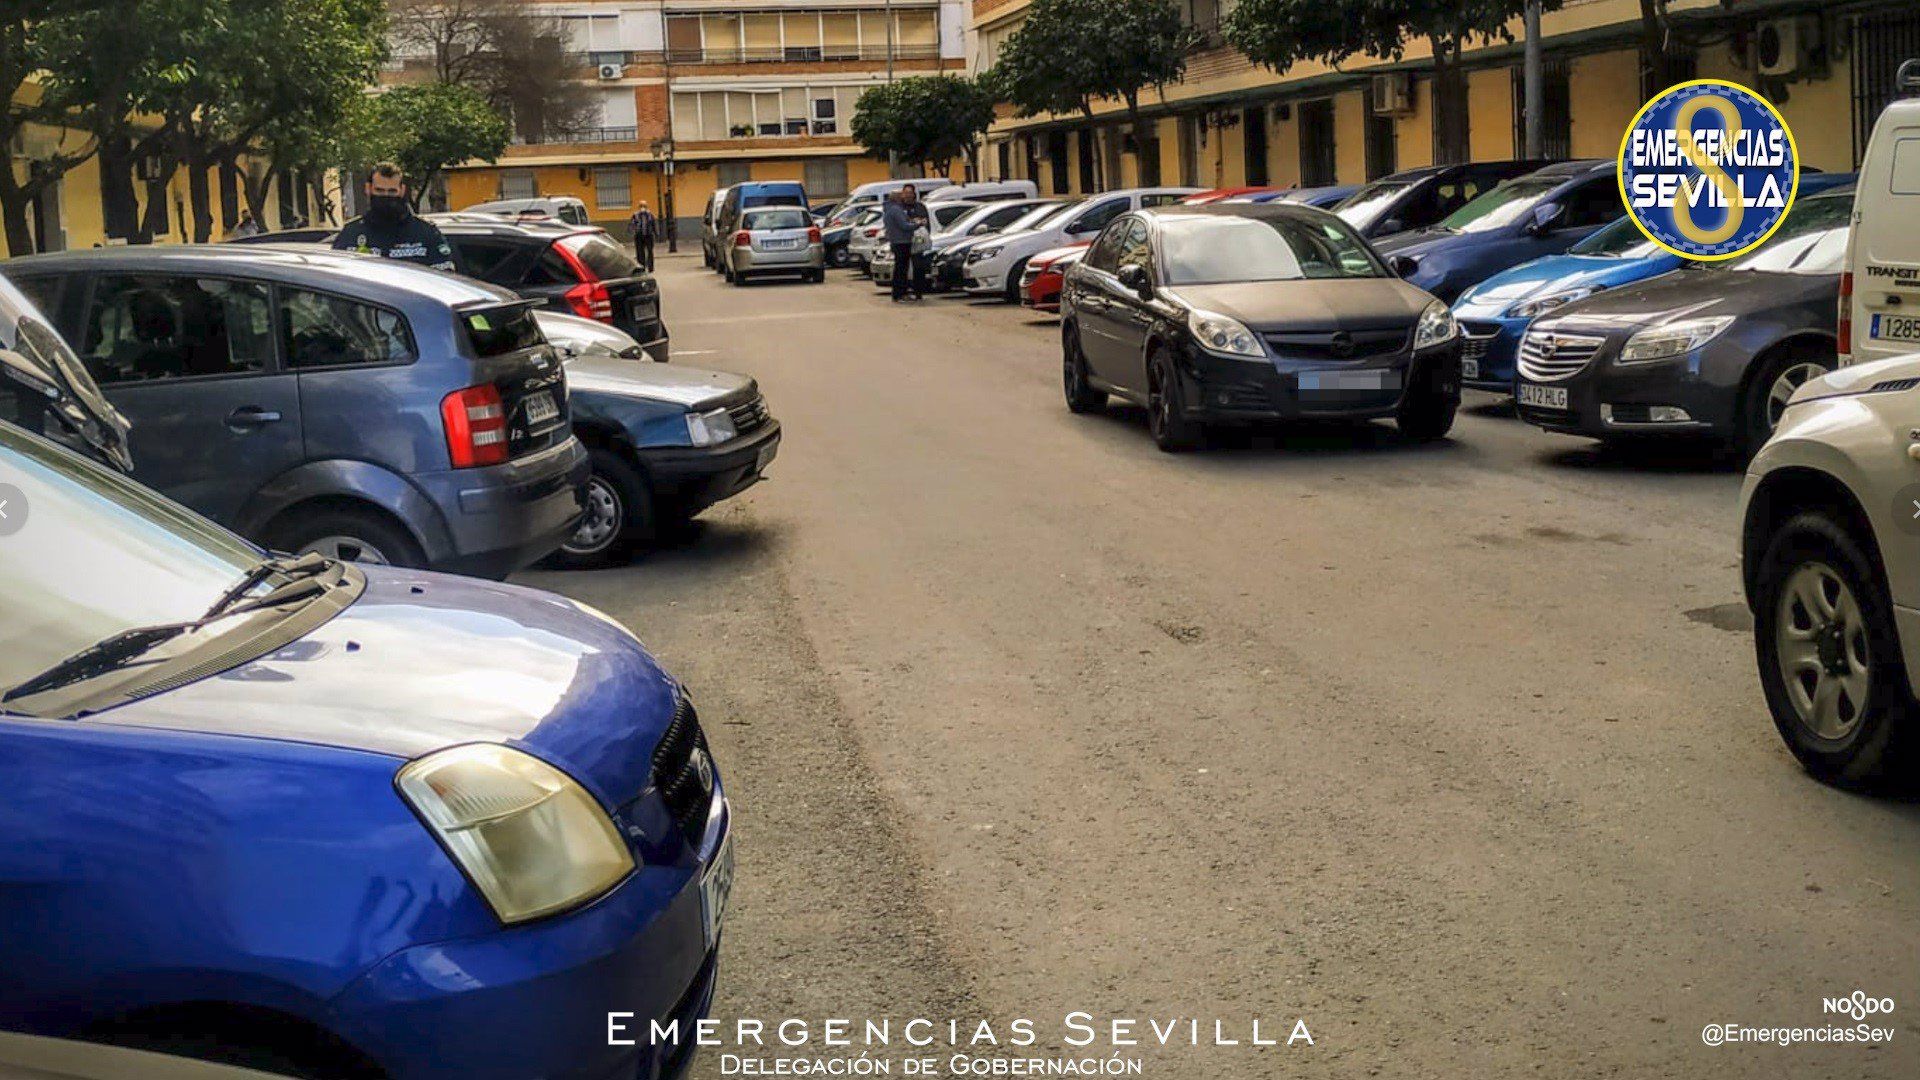 Choca con otros vehículos en Sevilla mientras conducía sin carné y superando diez veces la tasa de alcoholemia.